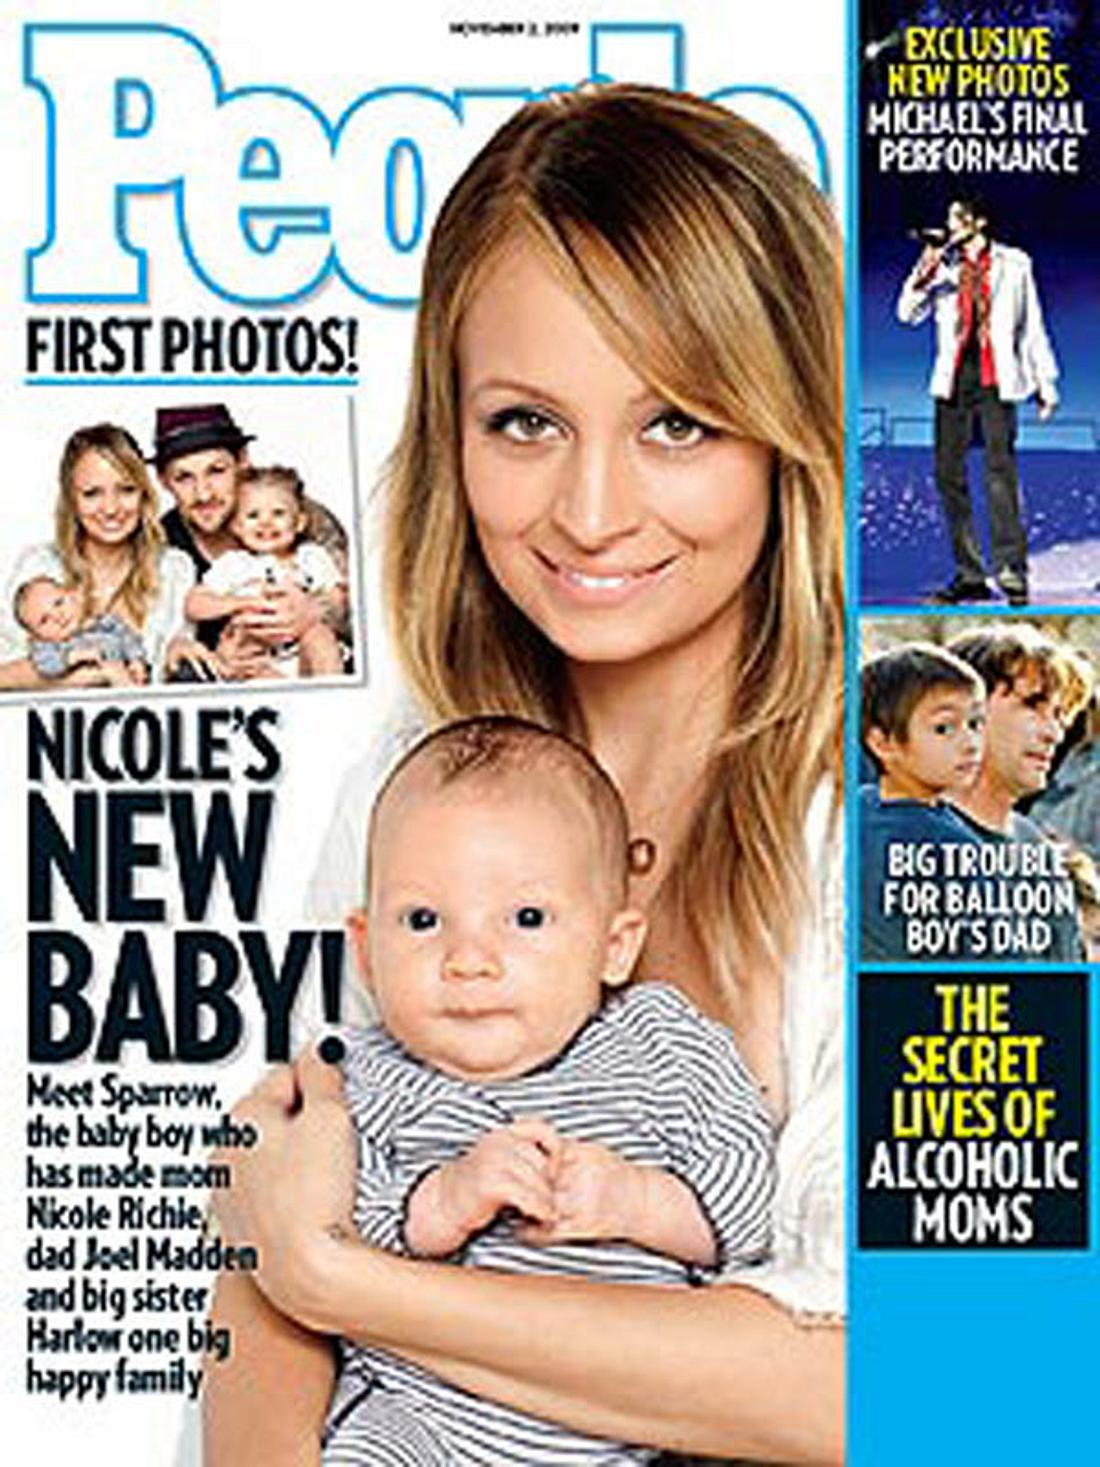 Kleiner Cover-Stars: Baby Sparrow in den Armen von Mami Nicole Richie